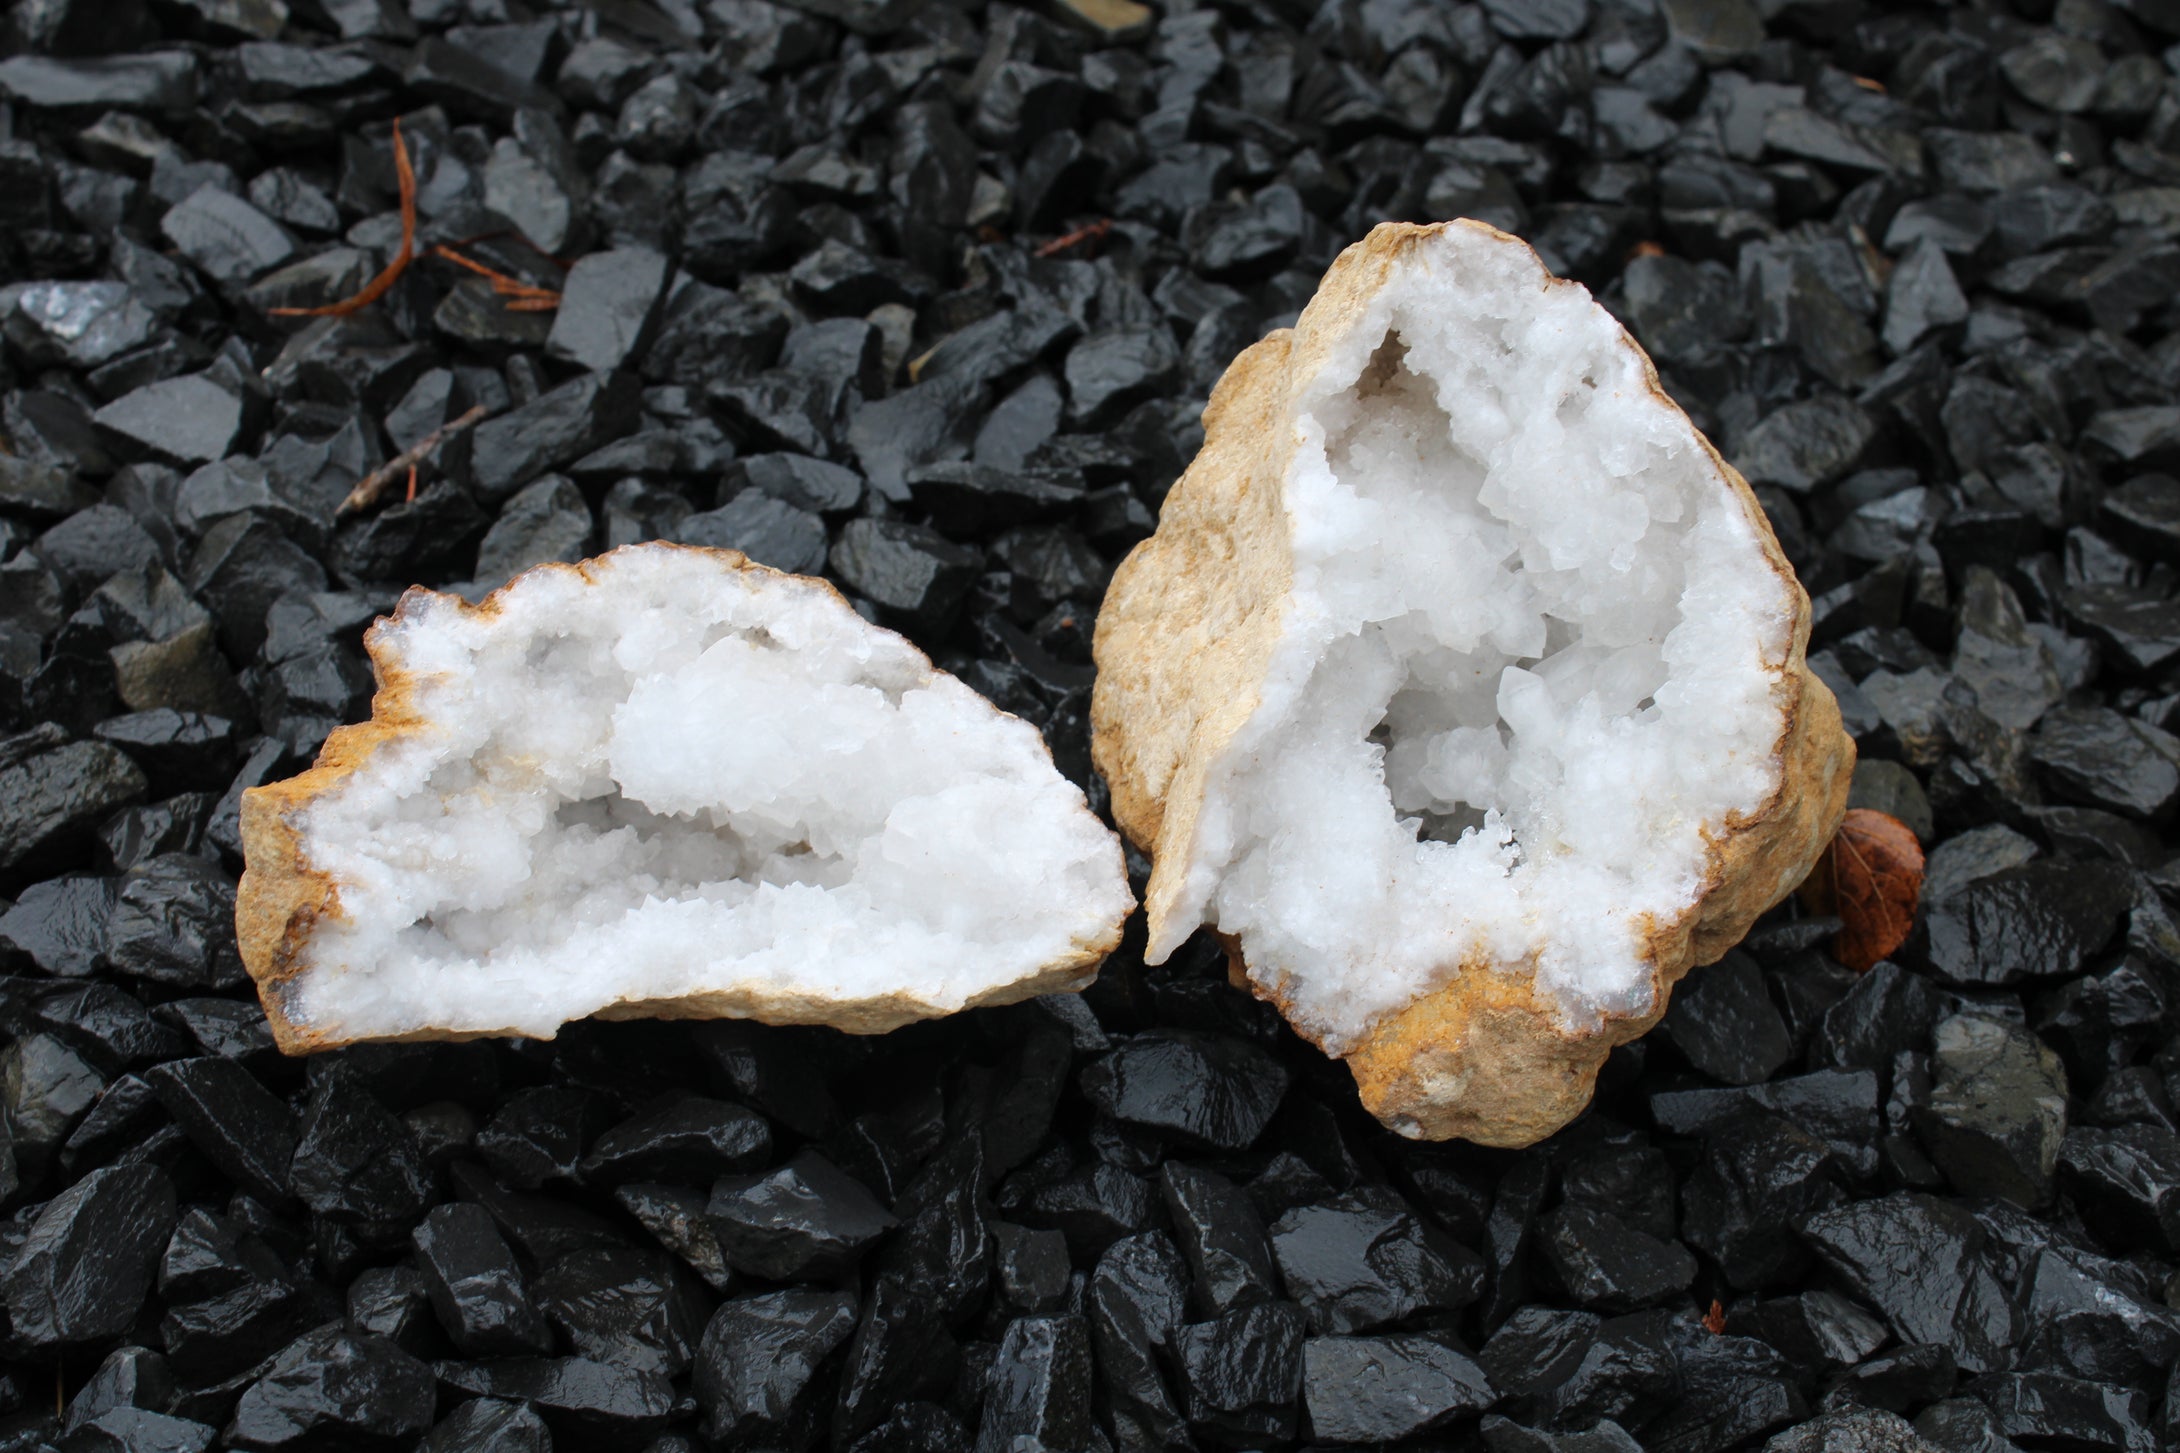 1 géode de cristal de roche complète 1.2 kilos 13 cm